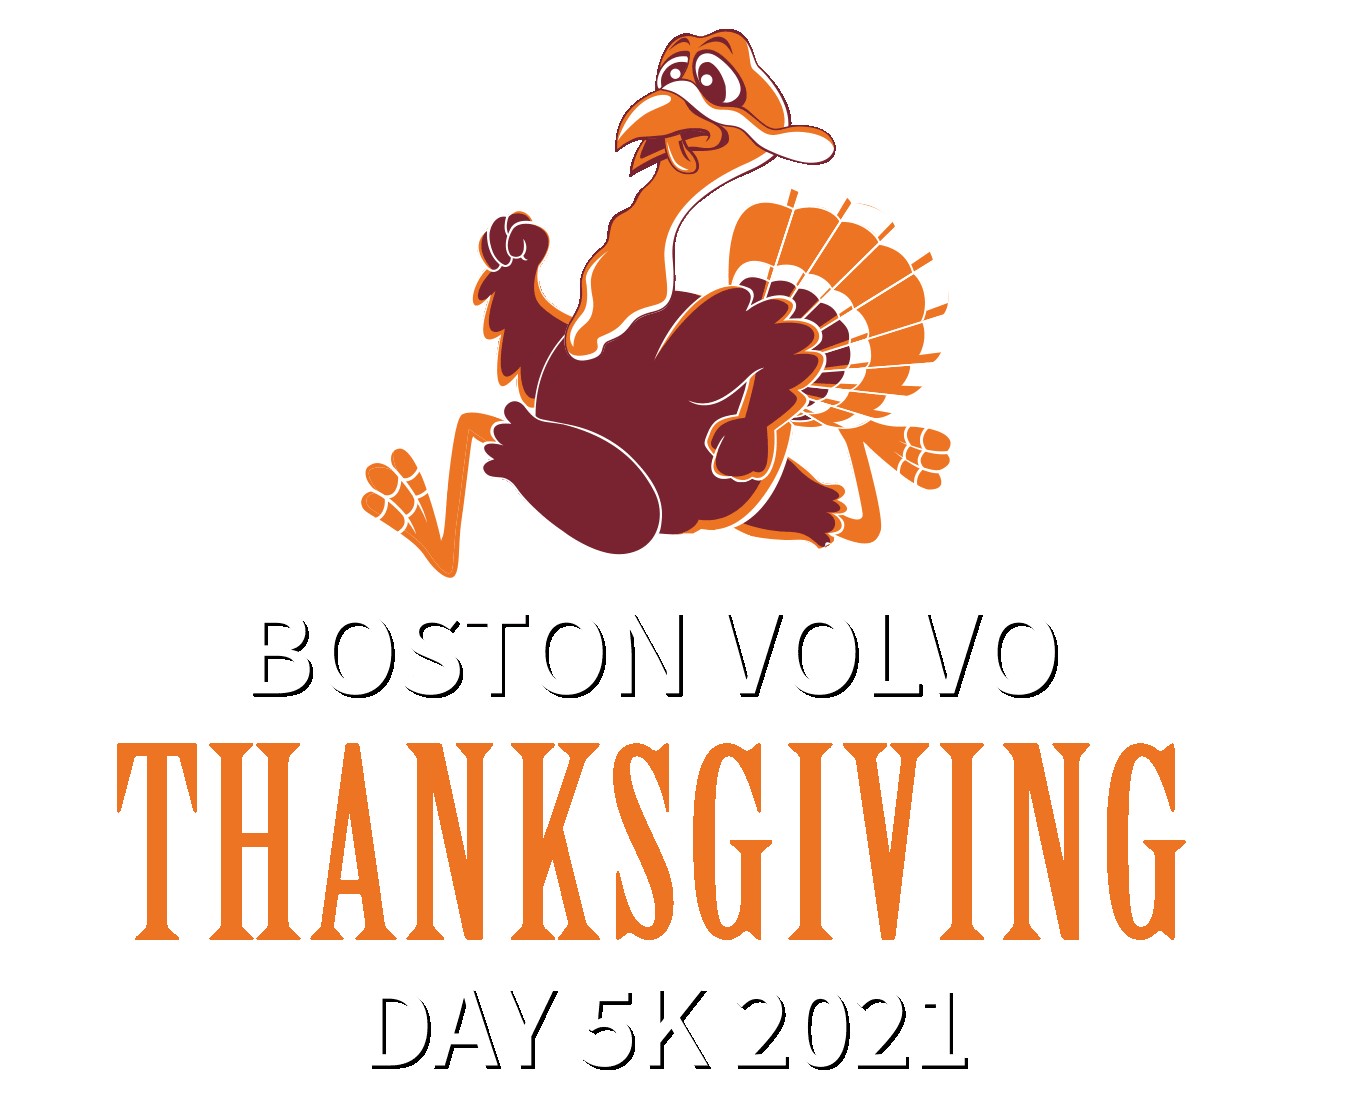 Boston Volvo Thanksgiving Day 5k 2021 logo